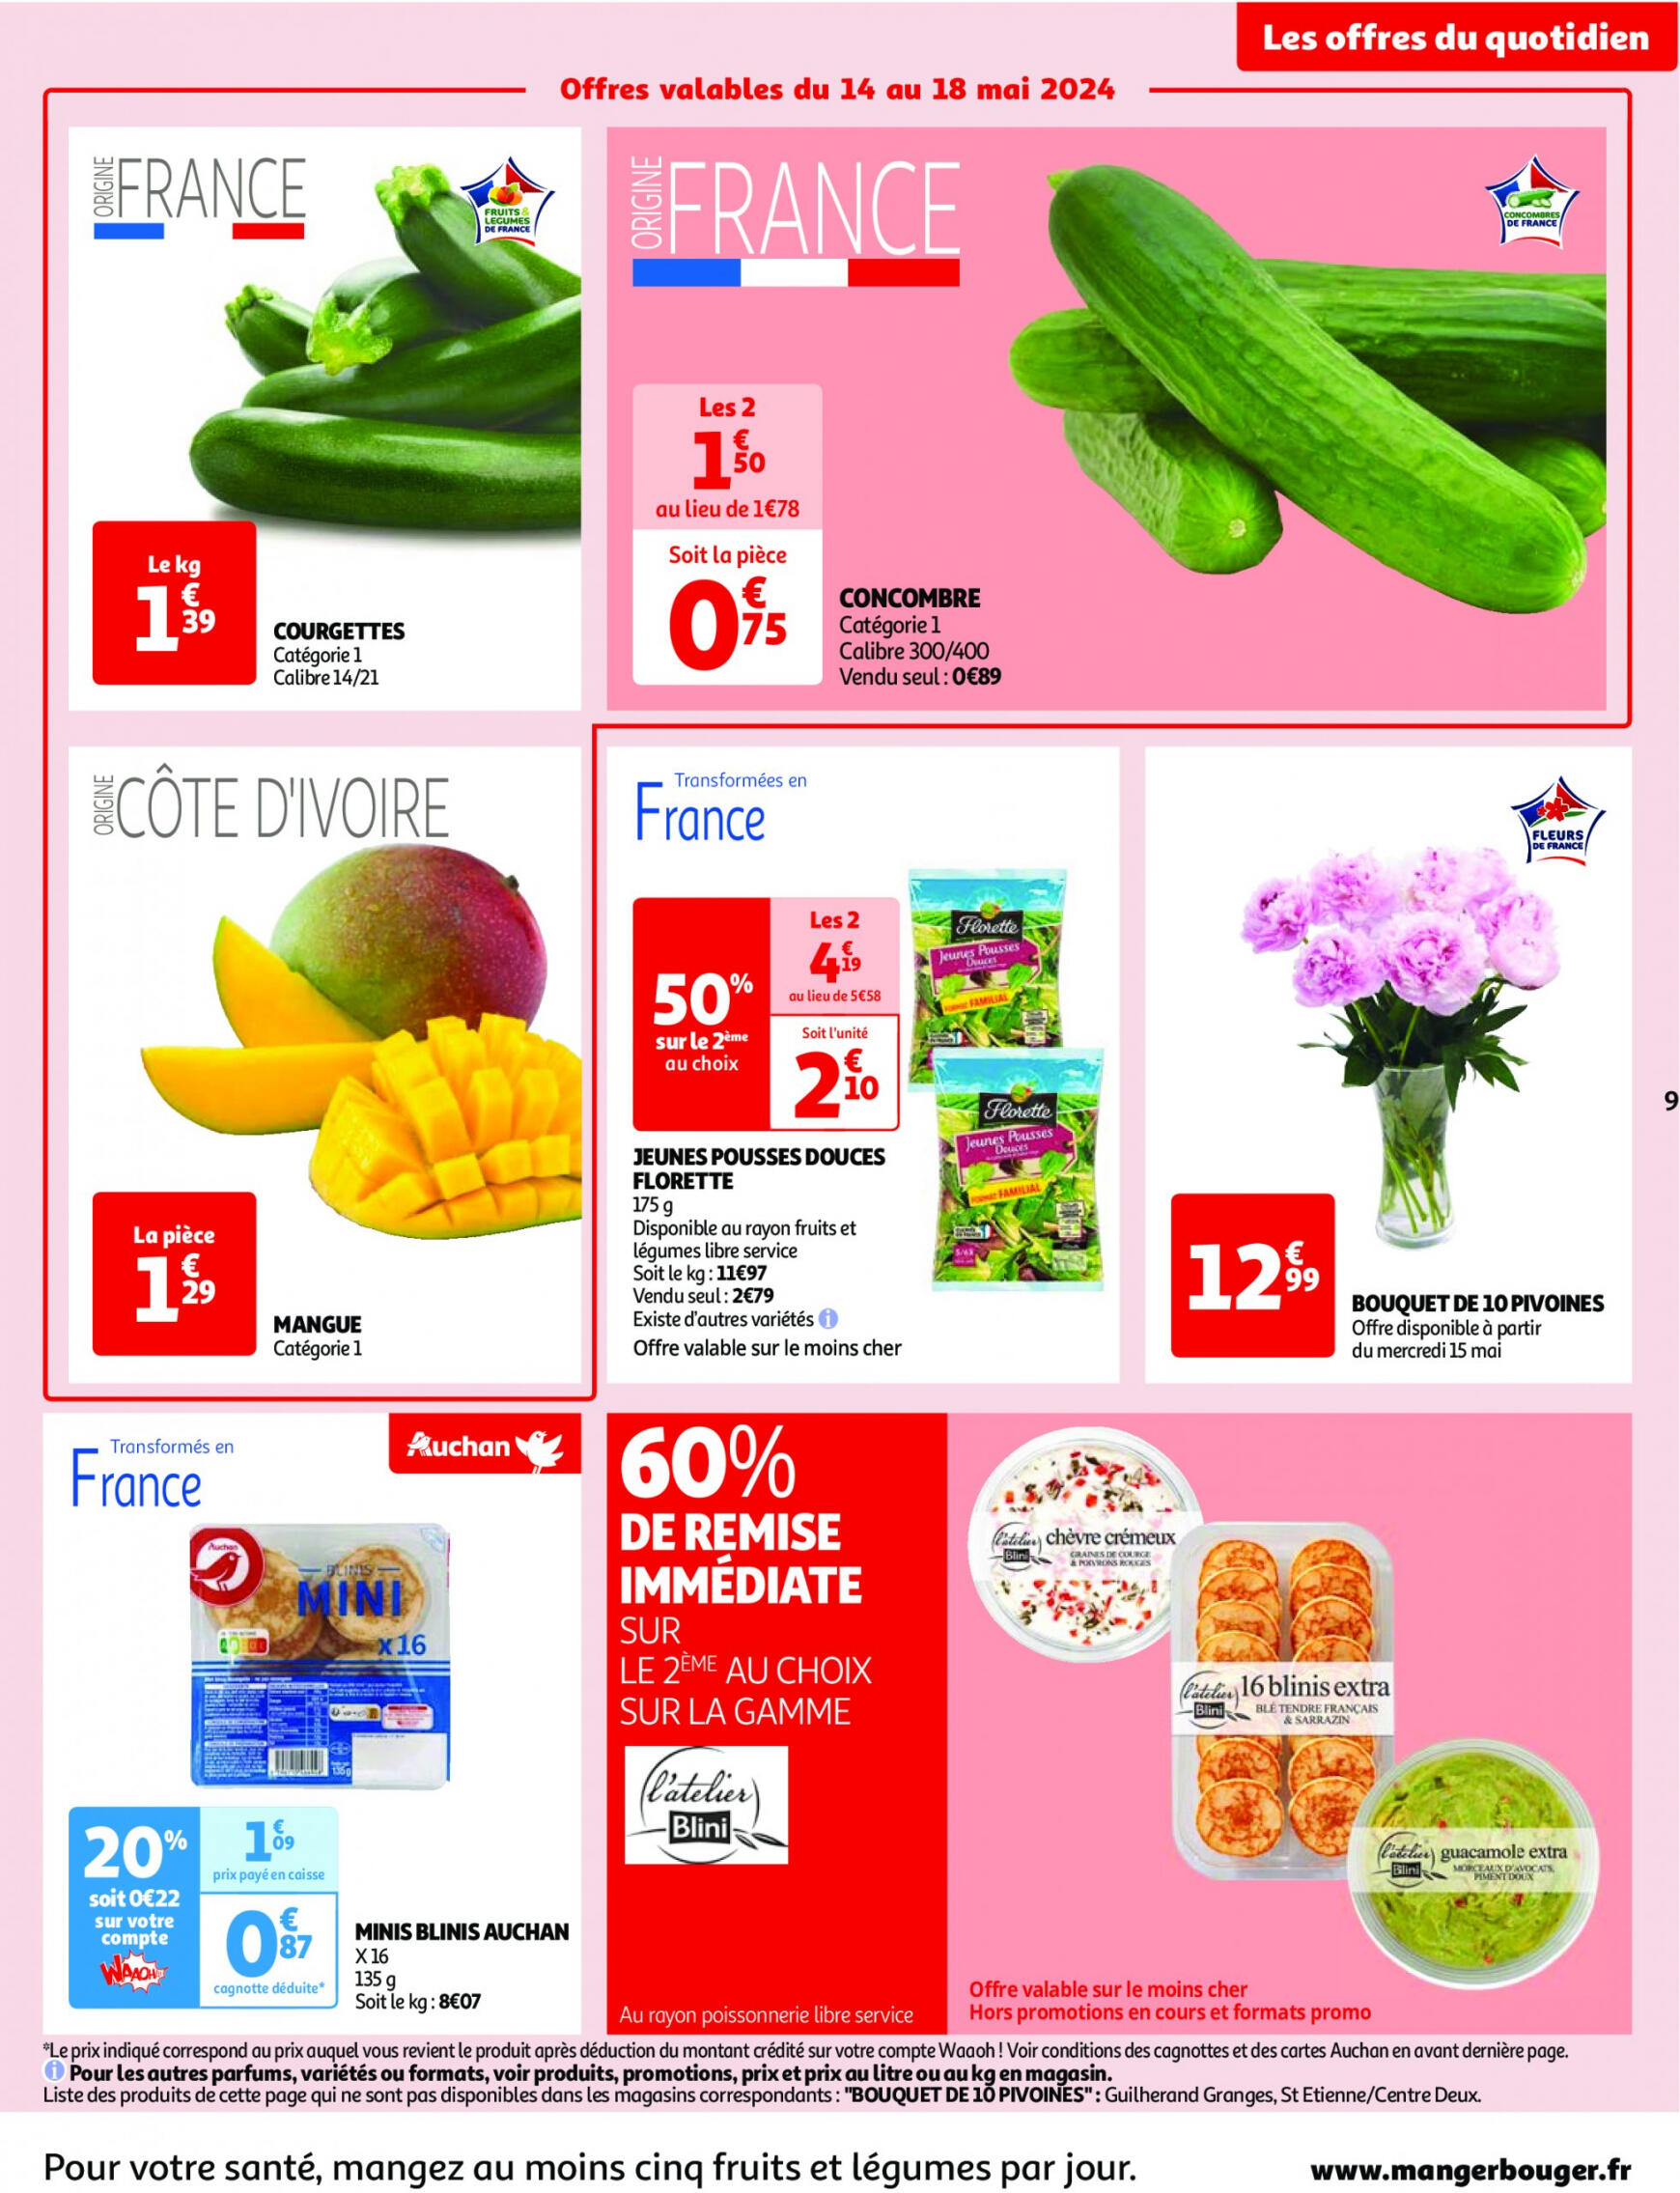 auchan - Prospectus Auchan actuel 14.05. - 21.05. - page: 9